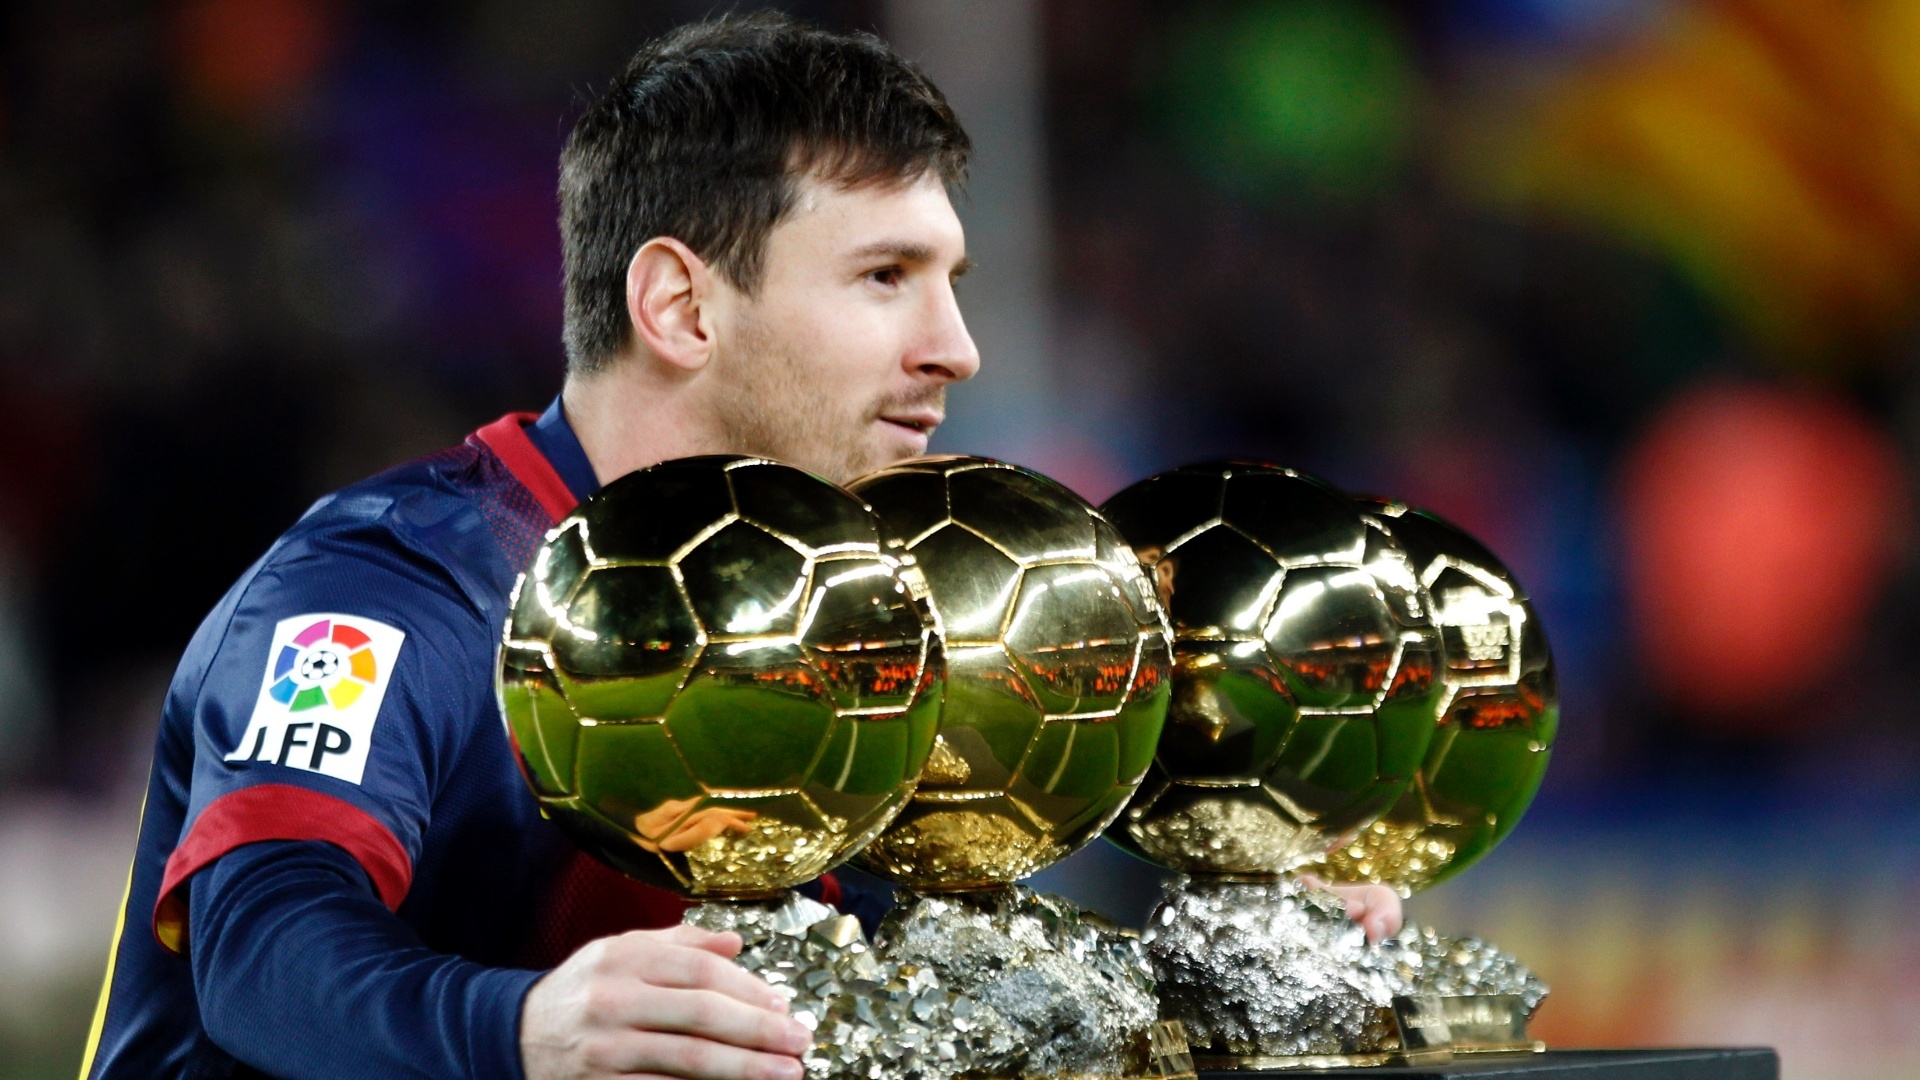 47+] Messi HD Wallpapers 1080p - WallpaperSafari